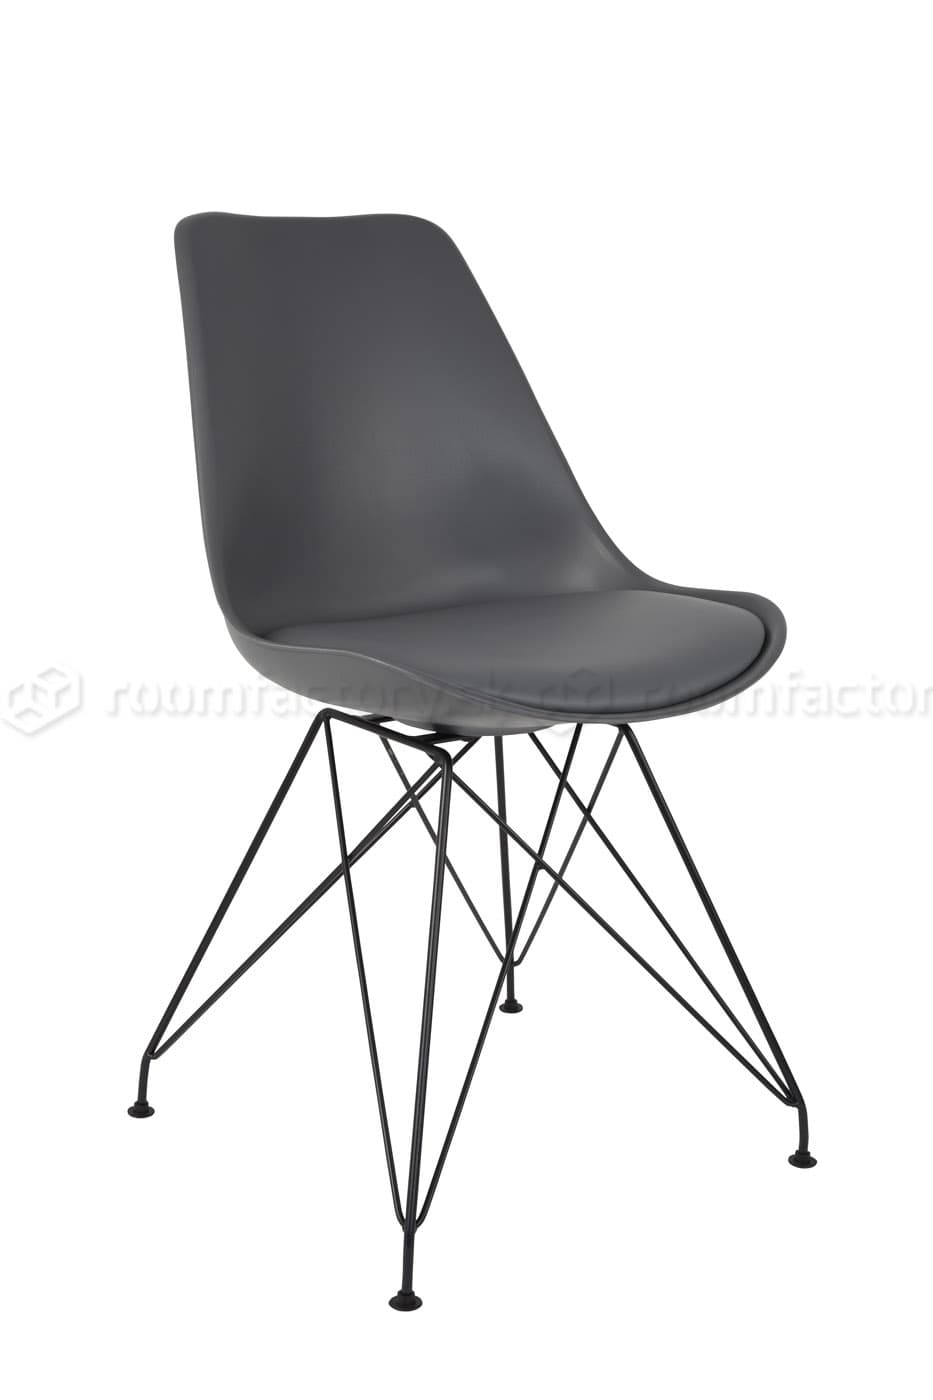 WL-Living Ozzy dizajnová stolička - výpredaj skladu